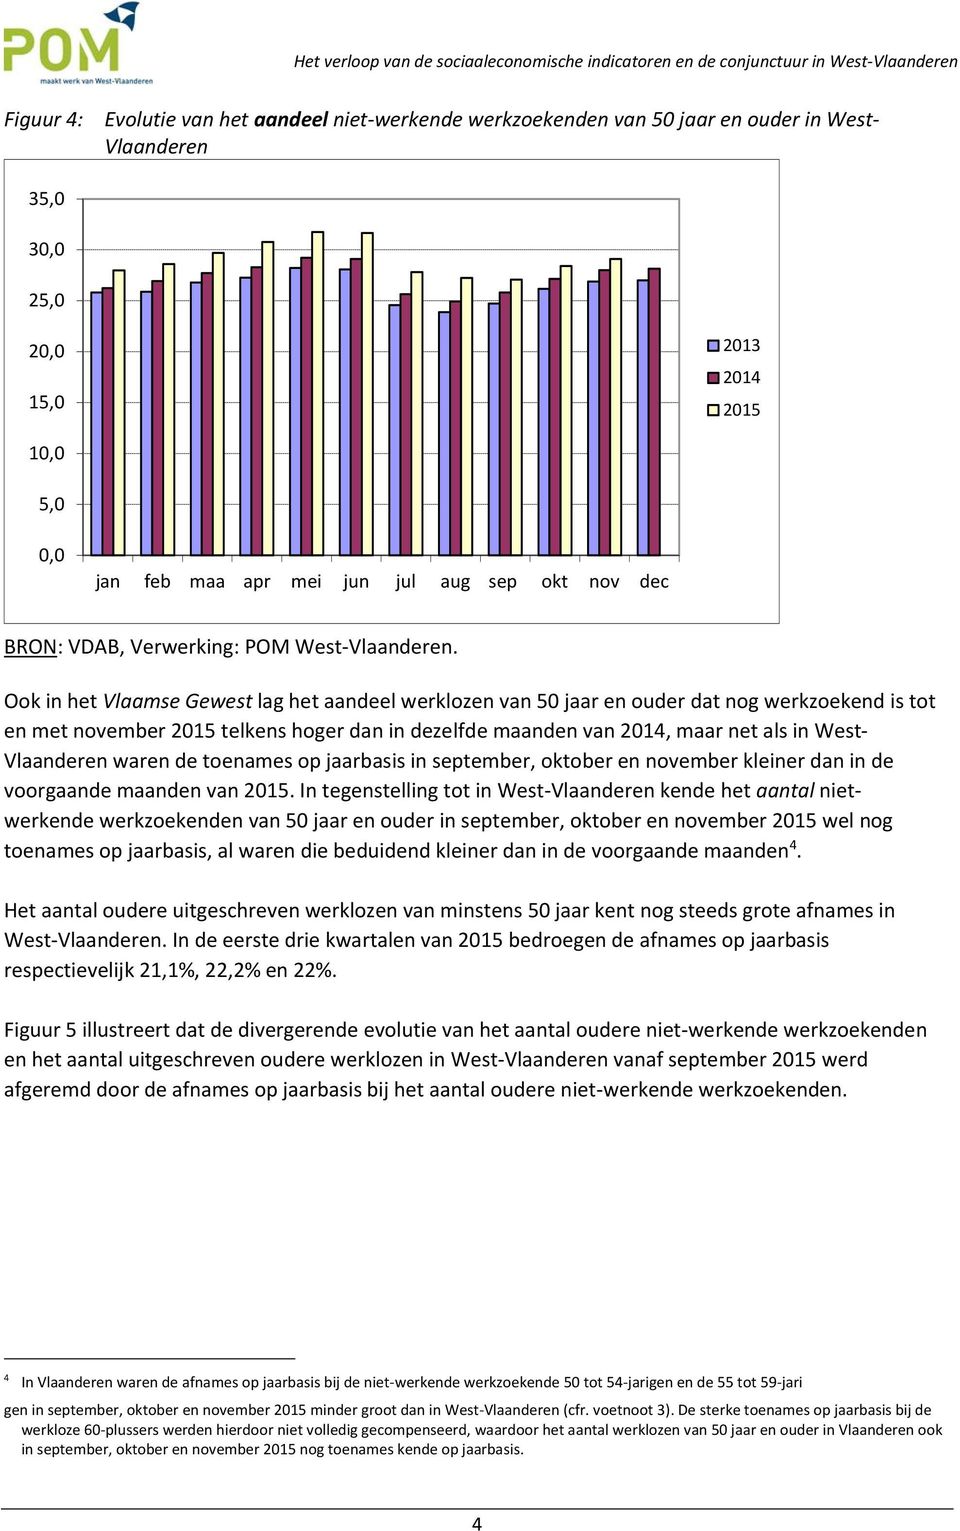 Ook in het Vlaamse Gewest lag het aandeel werklozen van 50 jaar en ouder dat nog werkzoekend is tot en met november 2015 telkens hoger dan in dezelfde maanden van 2014, maar net als in West